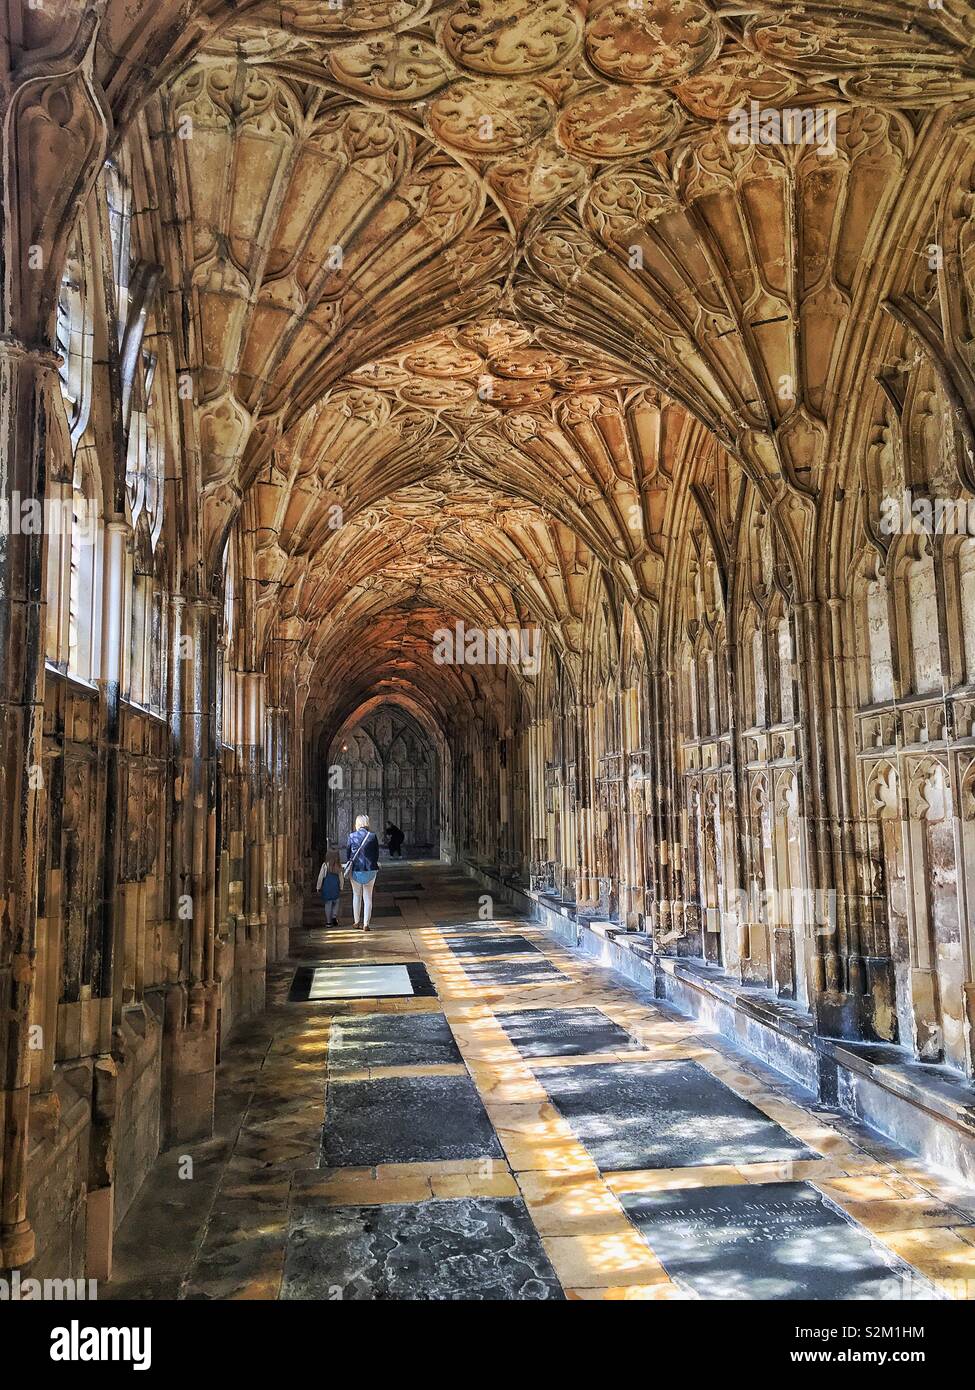 Gang durch die Kathedrale von Gloucester mit schönen Licht, das durch die Fenster kommt. Auch wo Sie gefilmt Teile von Harry Potter Filme Stockfoto